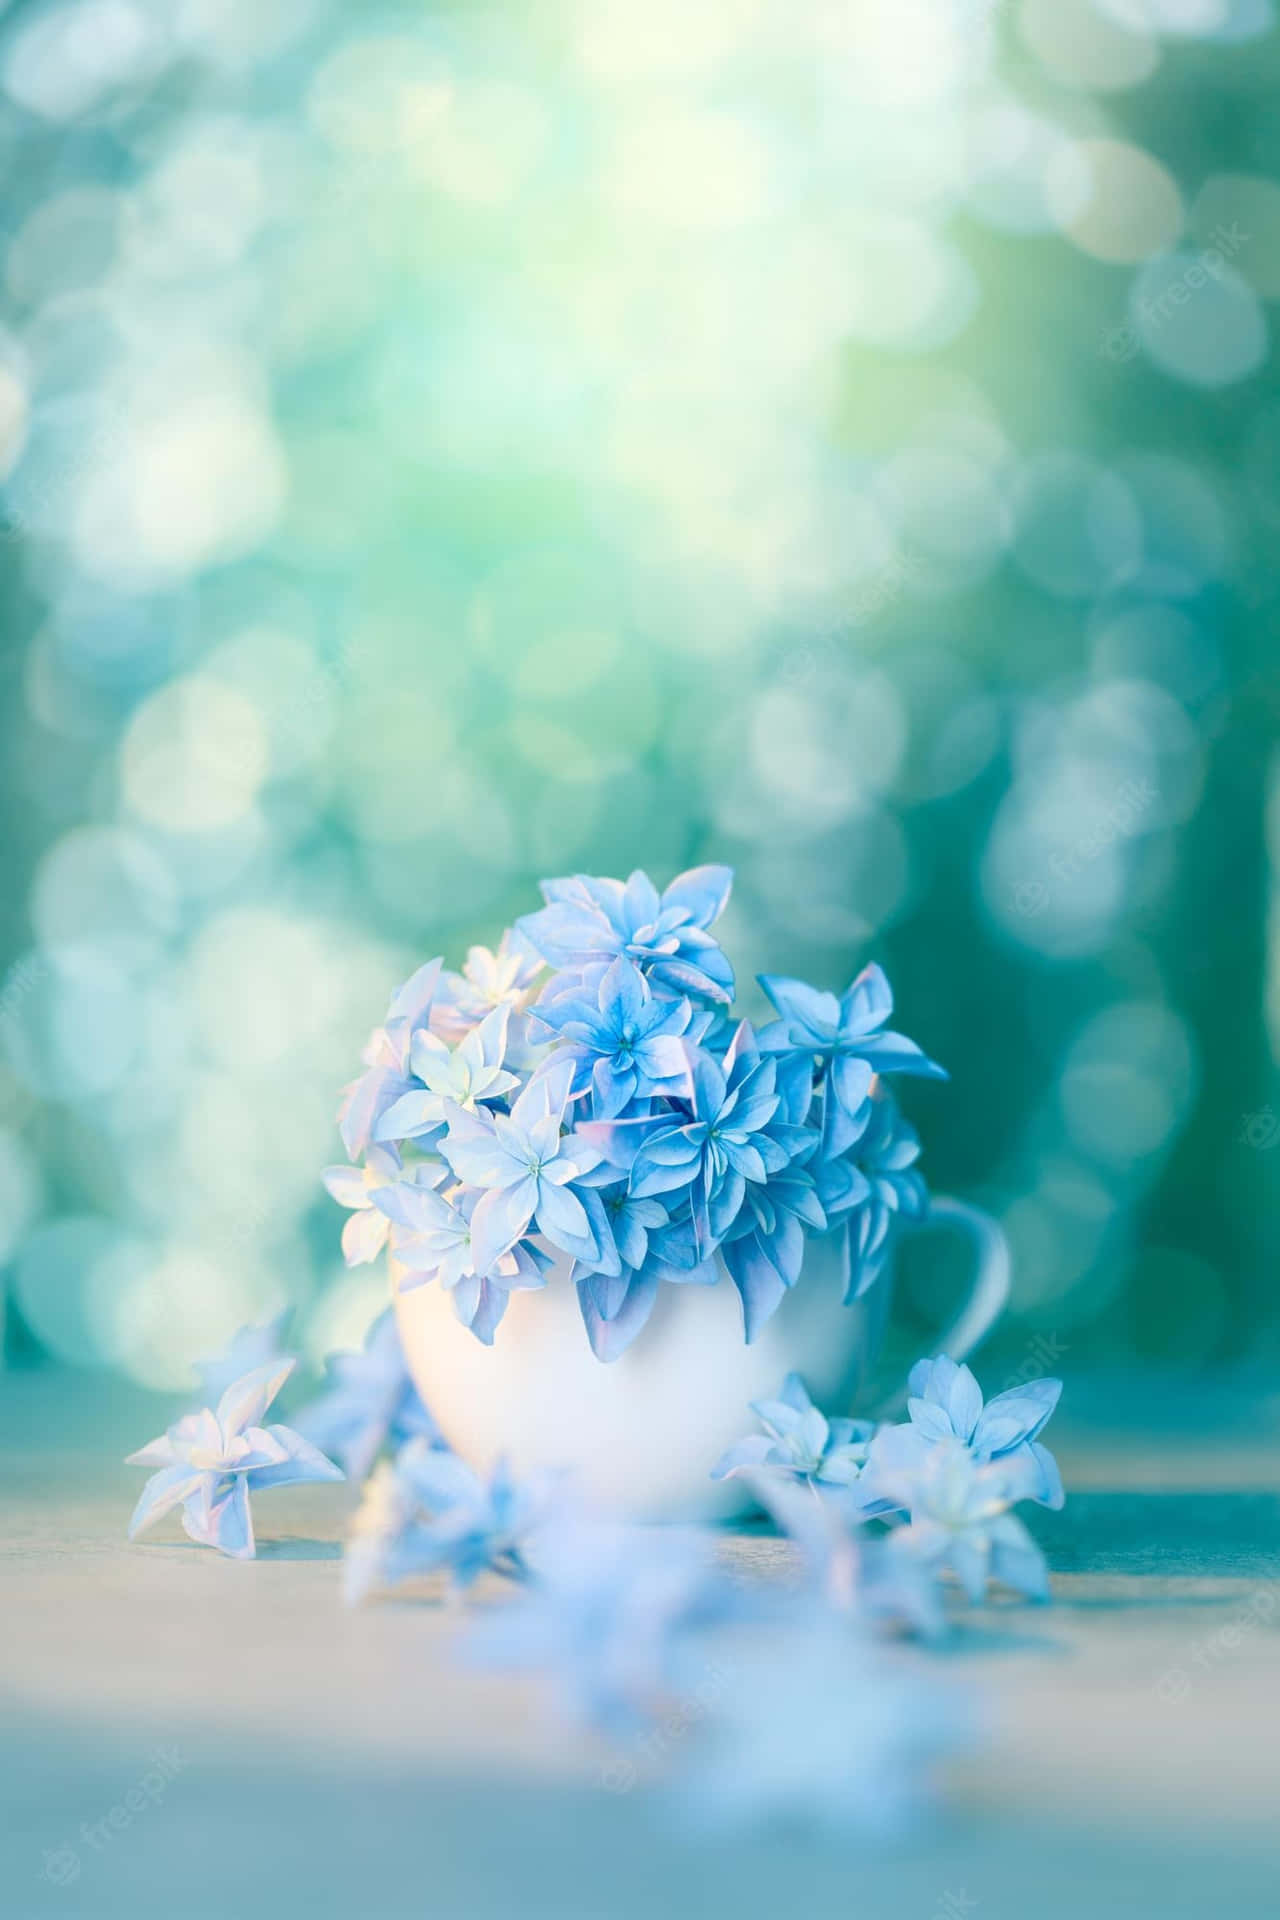 Imagemde Copo Branco Com Flores Azuis Em Bokeh